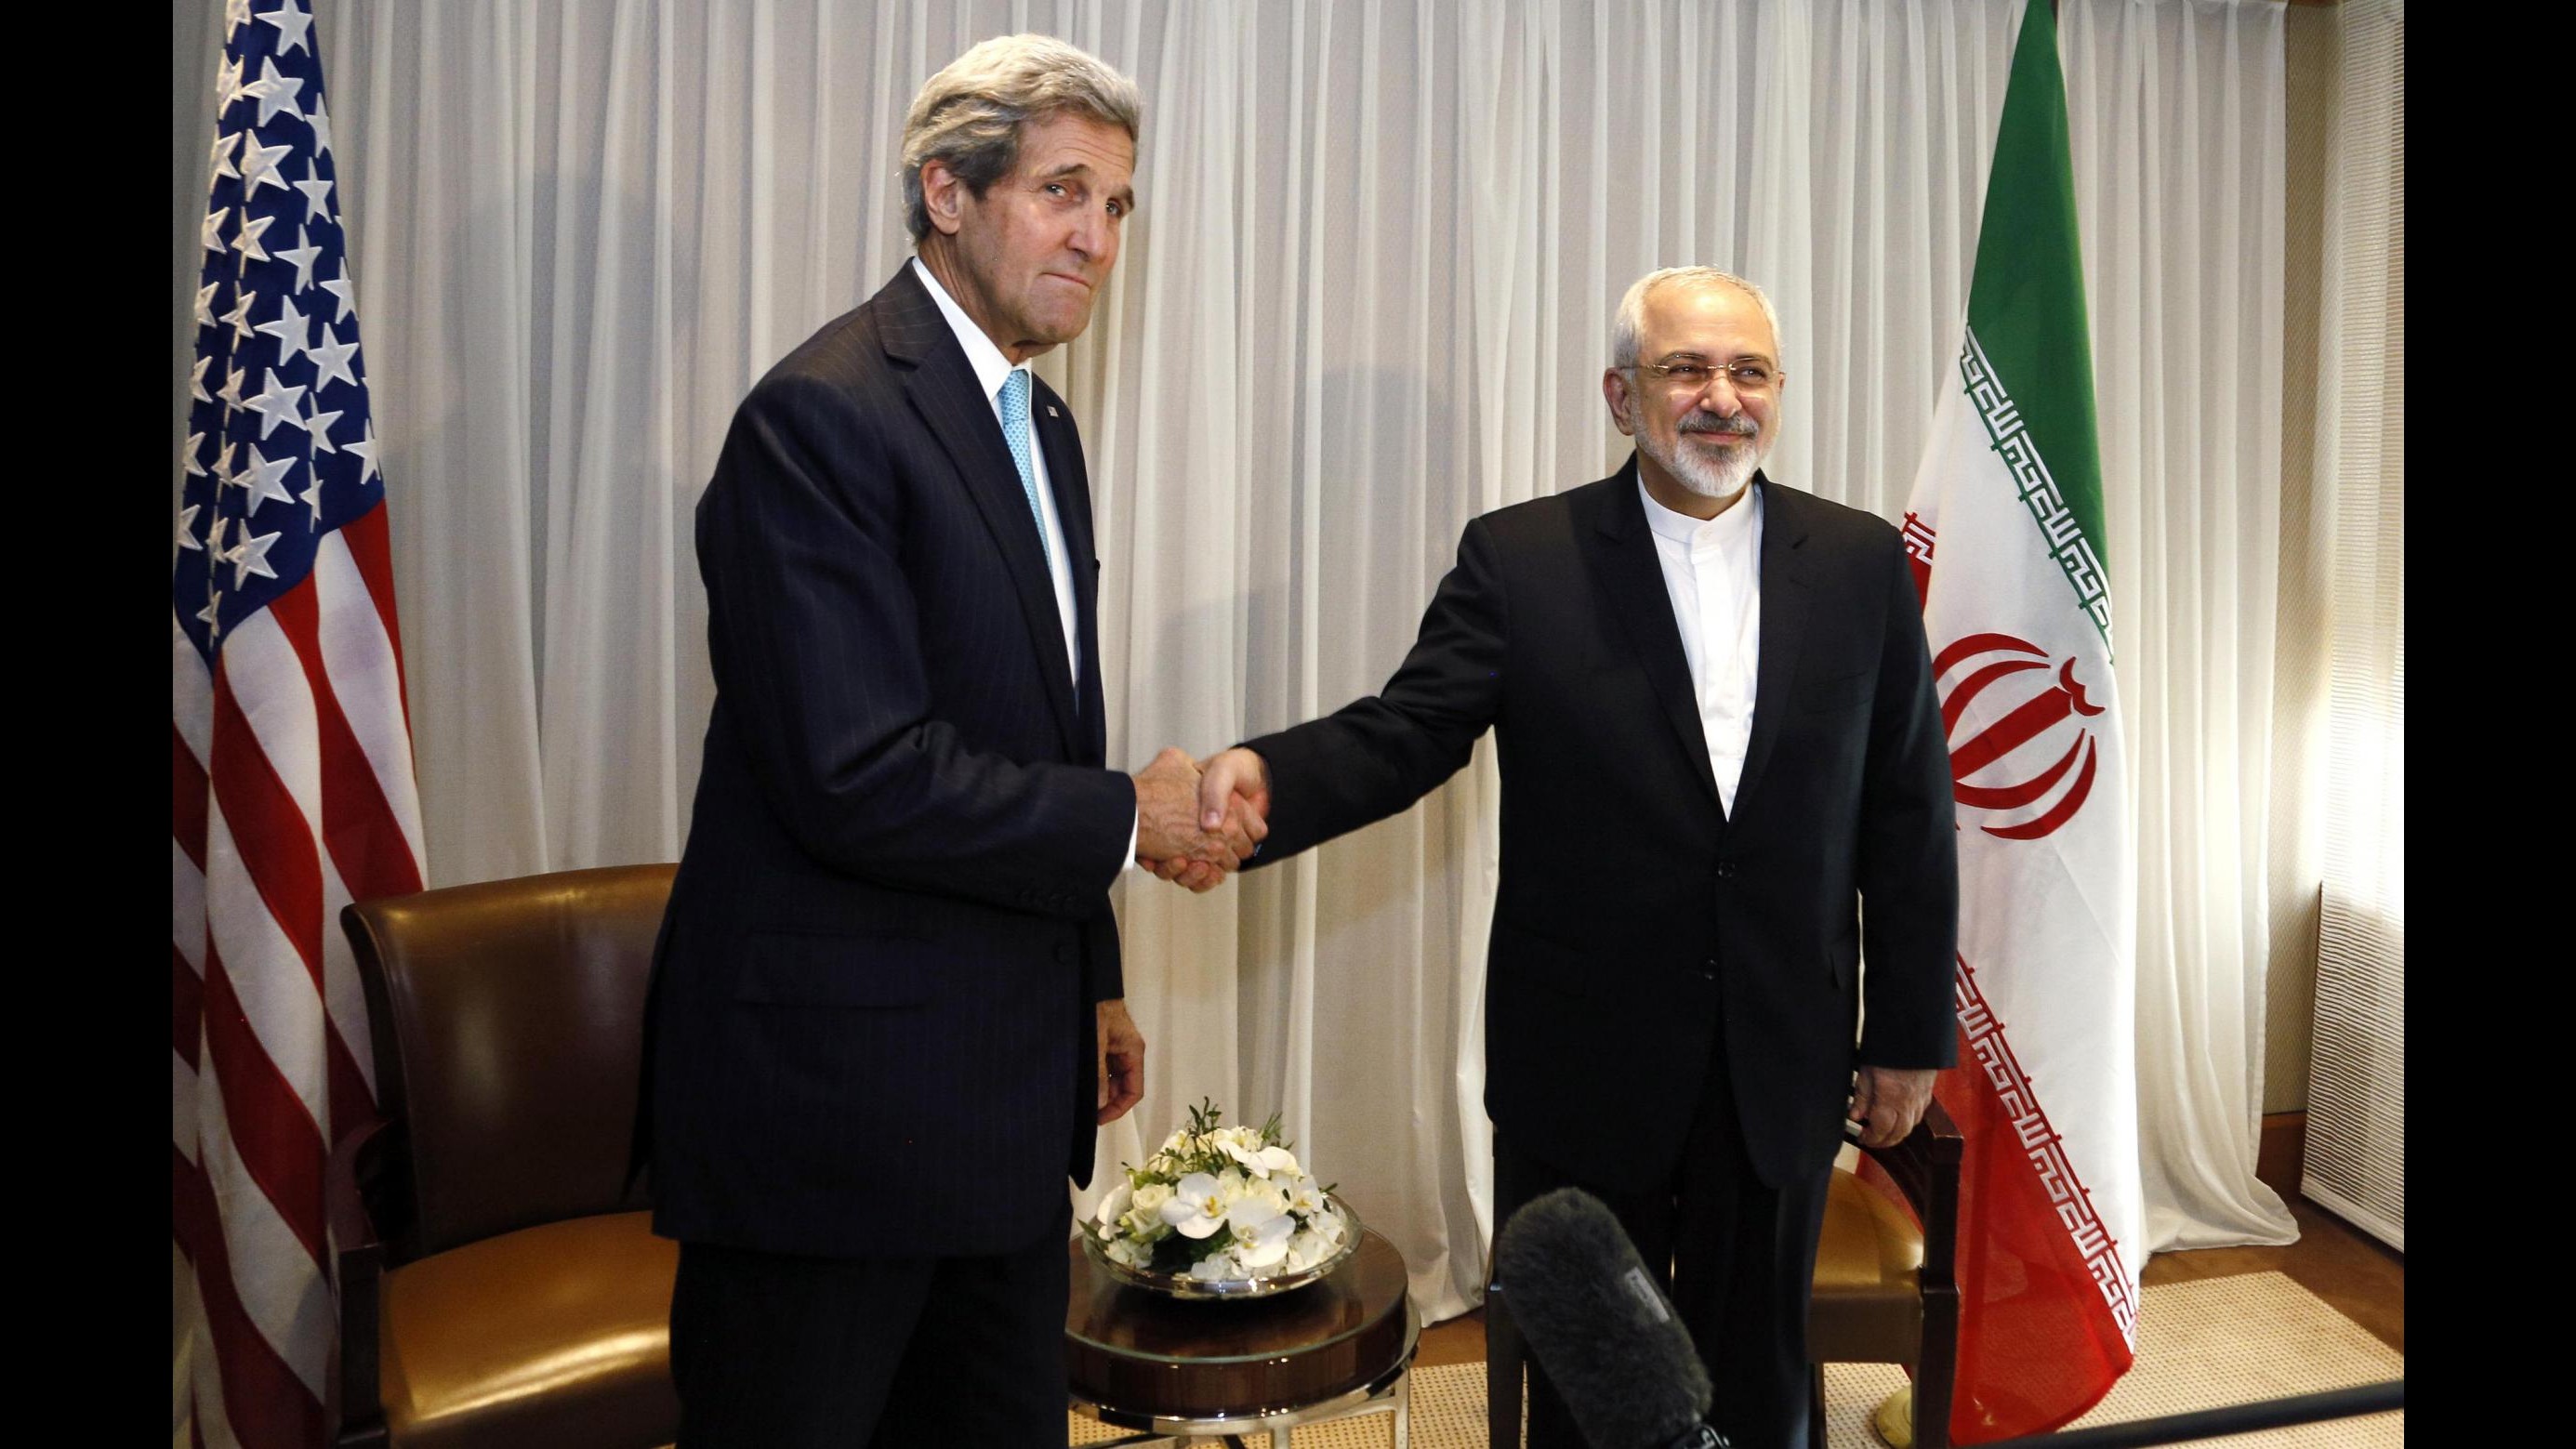 Iran, Zarif incontra Kerry e Fabius. Obama: Nuove sanzioni allontanerebbero soluzione diplomatica